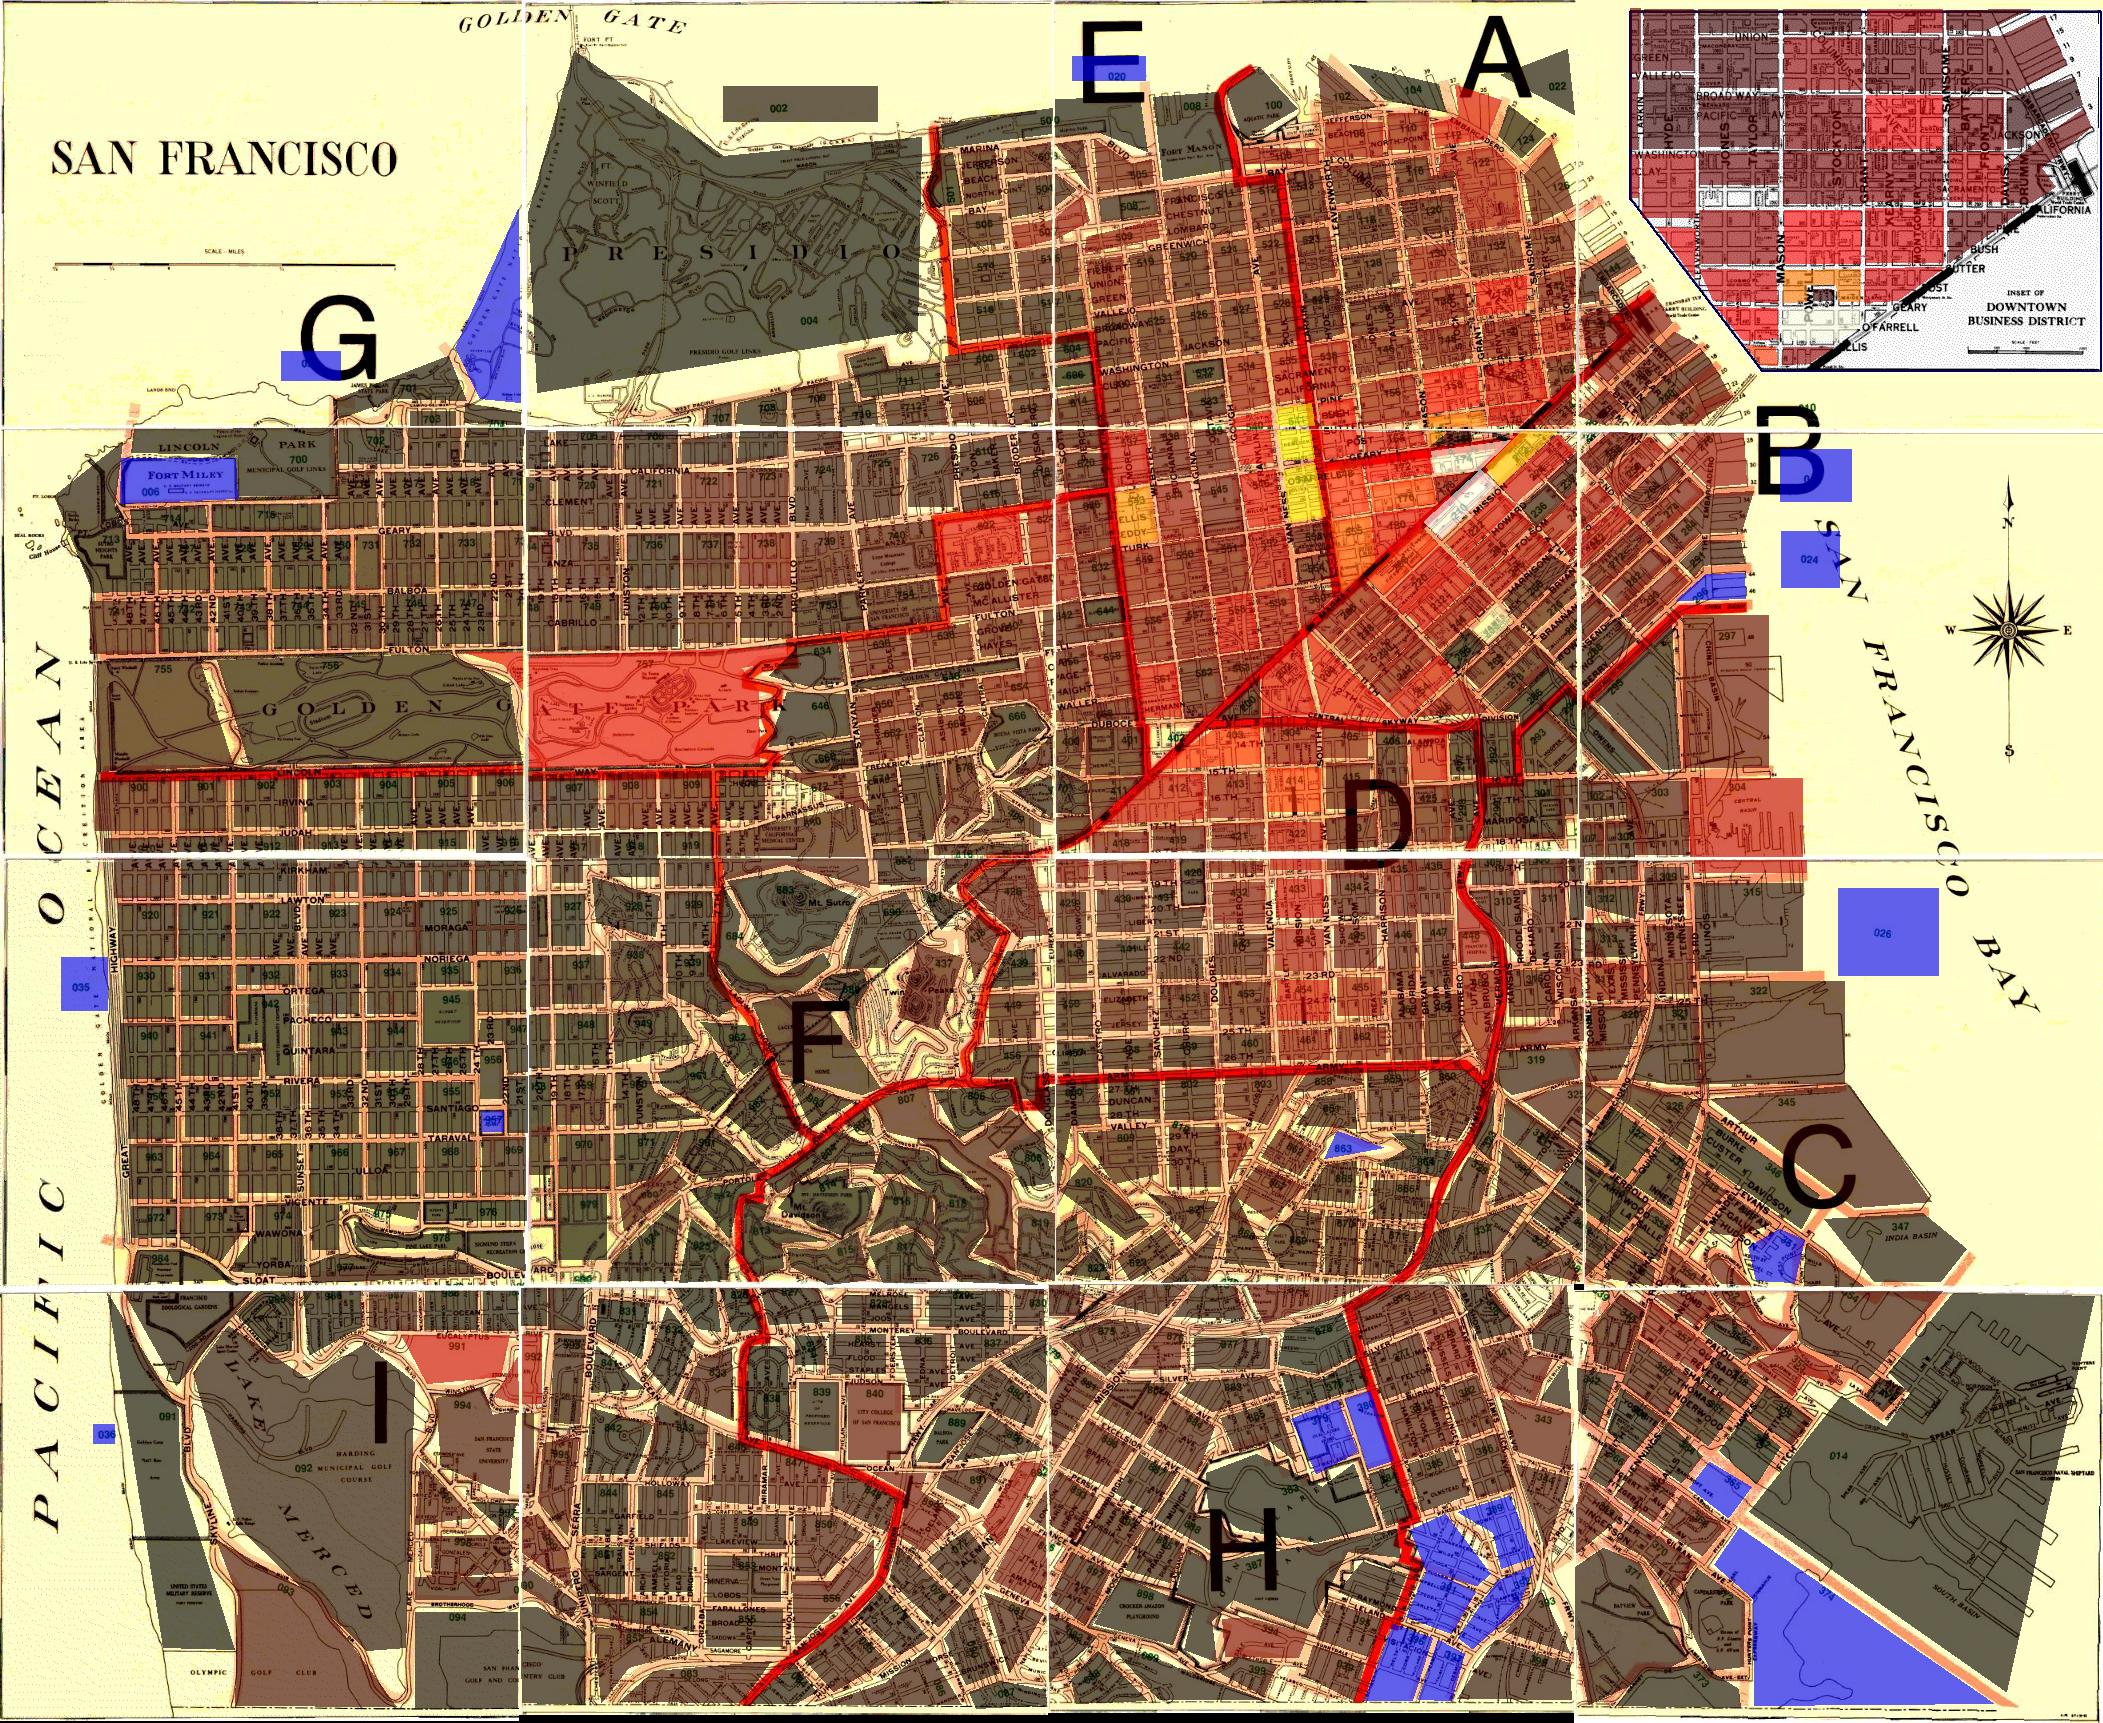 Neighborhood Crime Map